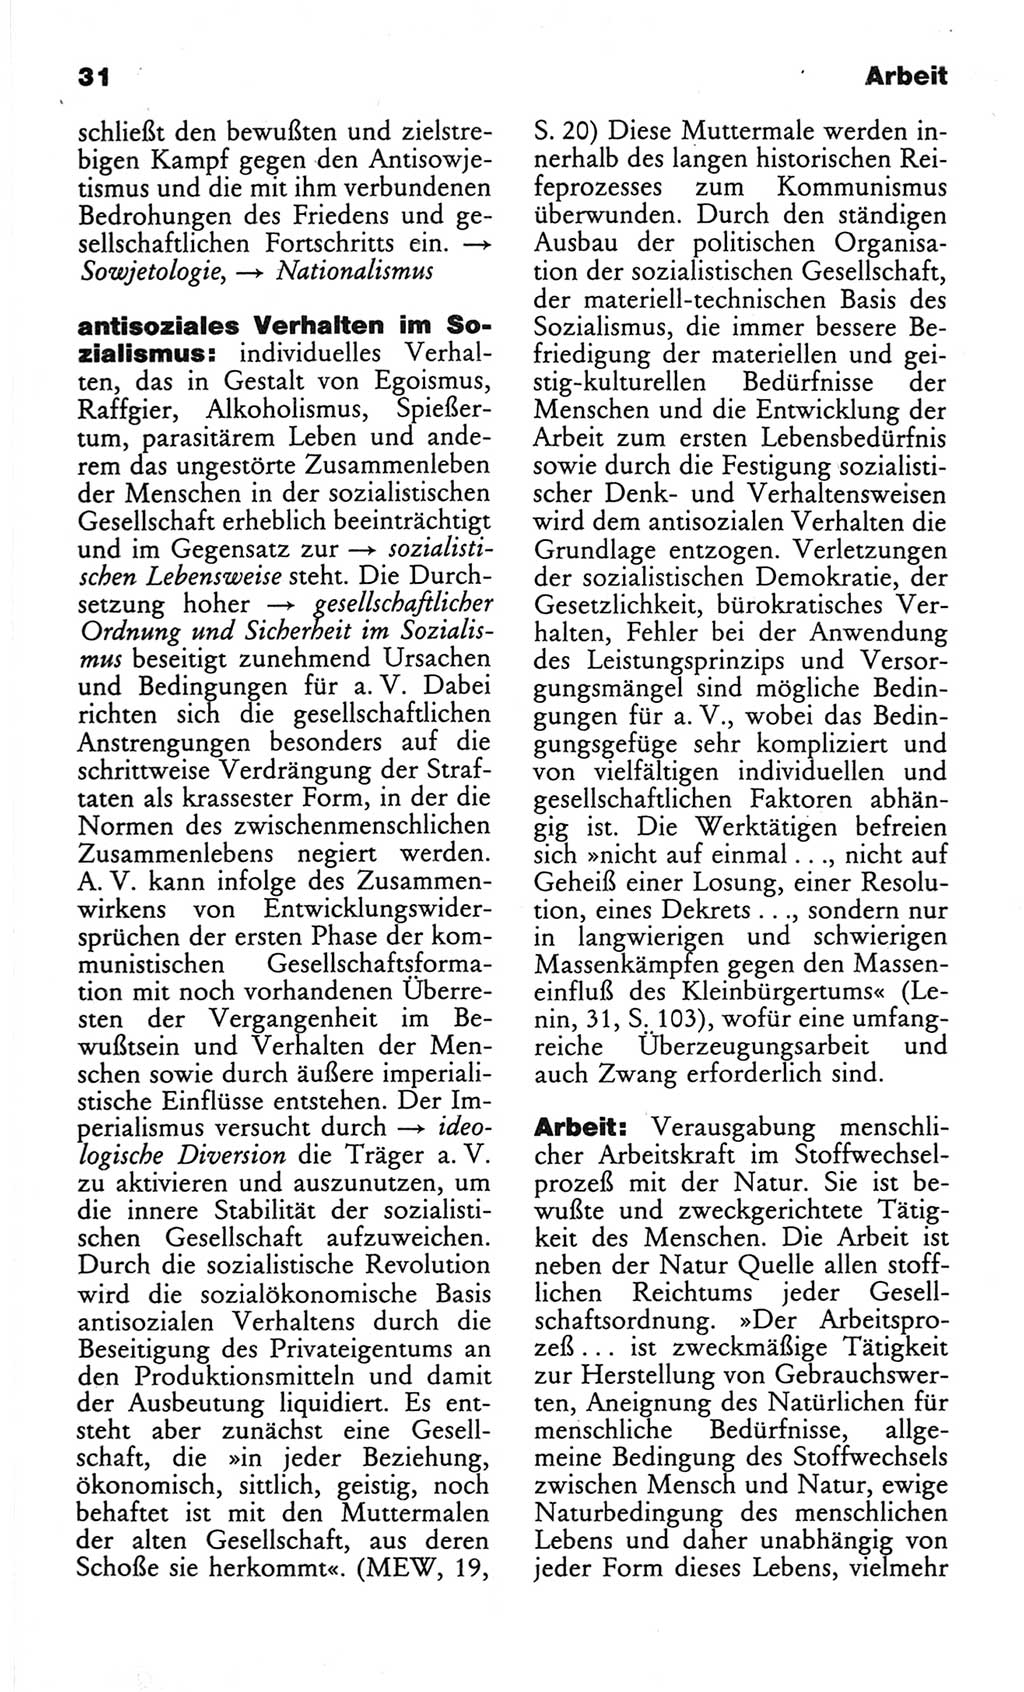 Wörterbuch des wissenschaftlichen Kommunismus [Deutsche Demokratische Republik (DDR)] 1982, Seite 31 (Wb. wiss. Komm. DDR 1982, S. 31)